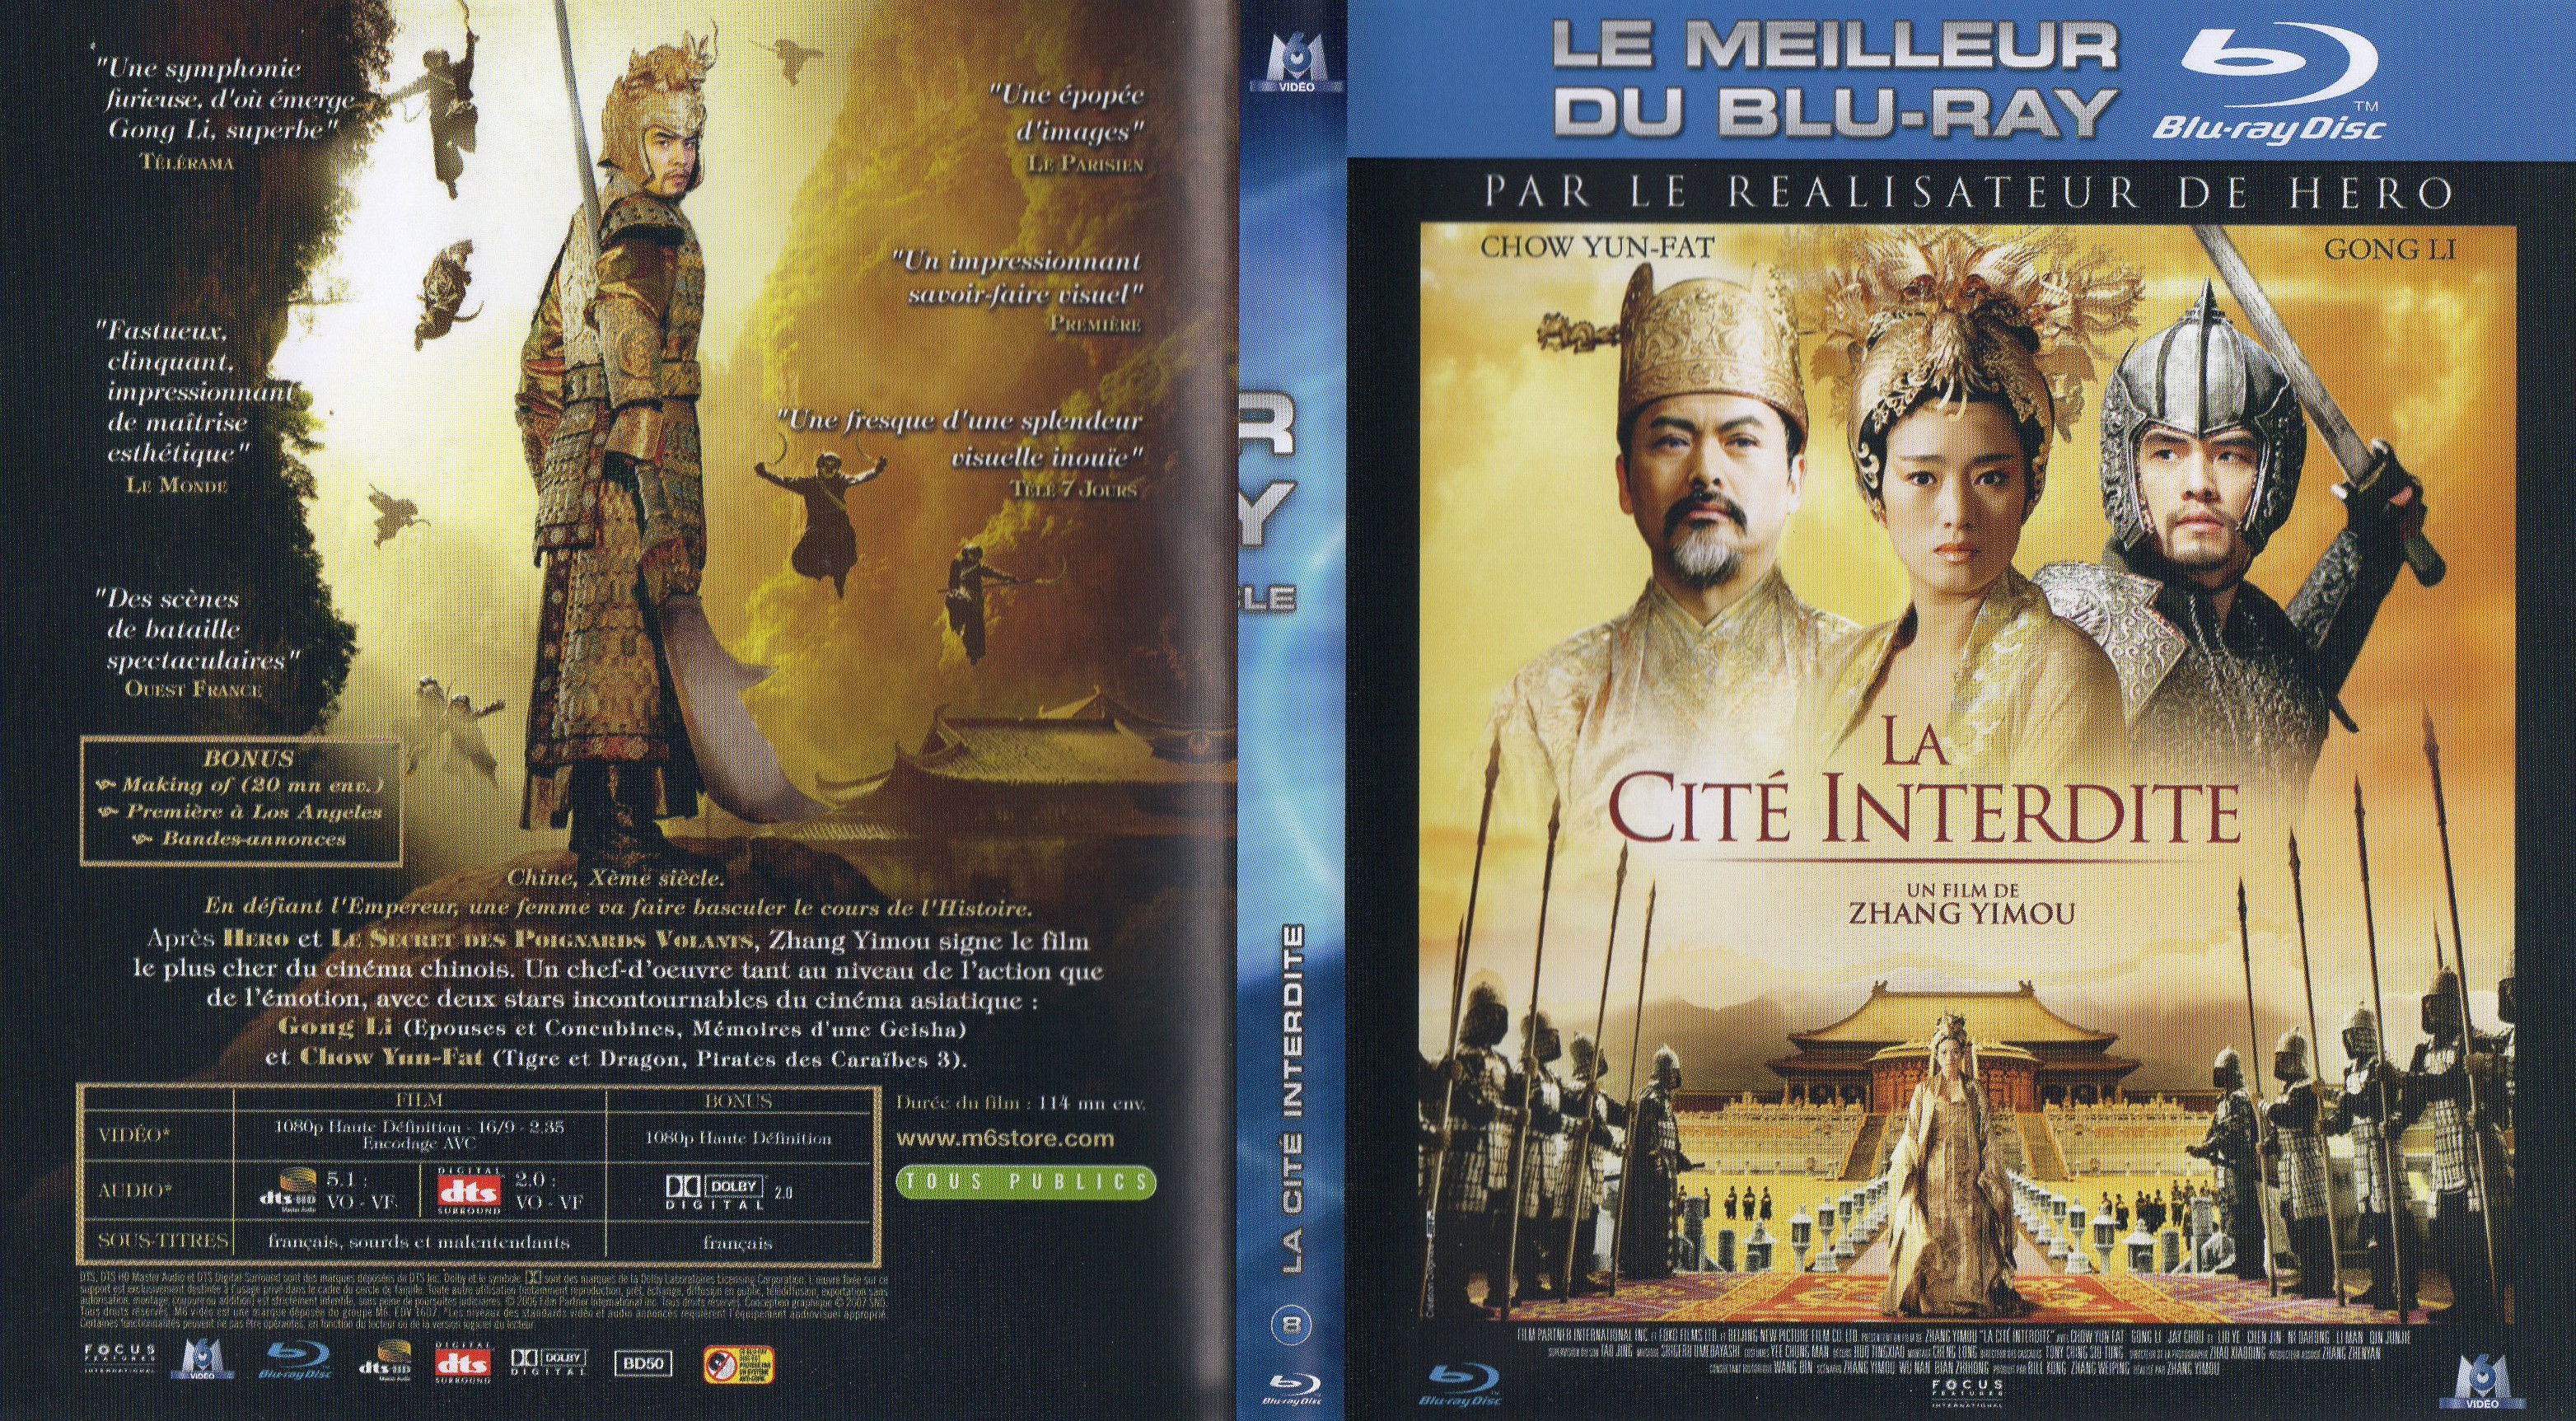 Jaquette DVD La cit interdite (BLU-RAY) v2